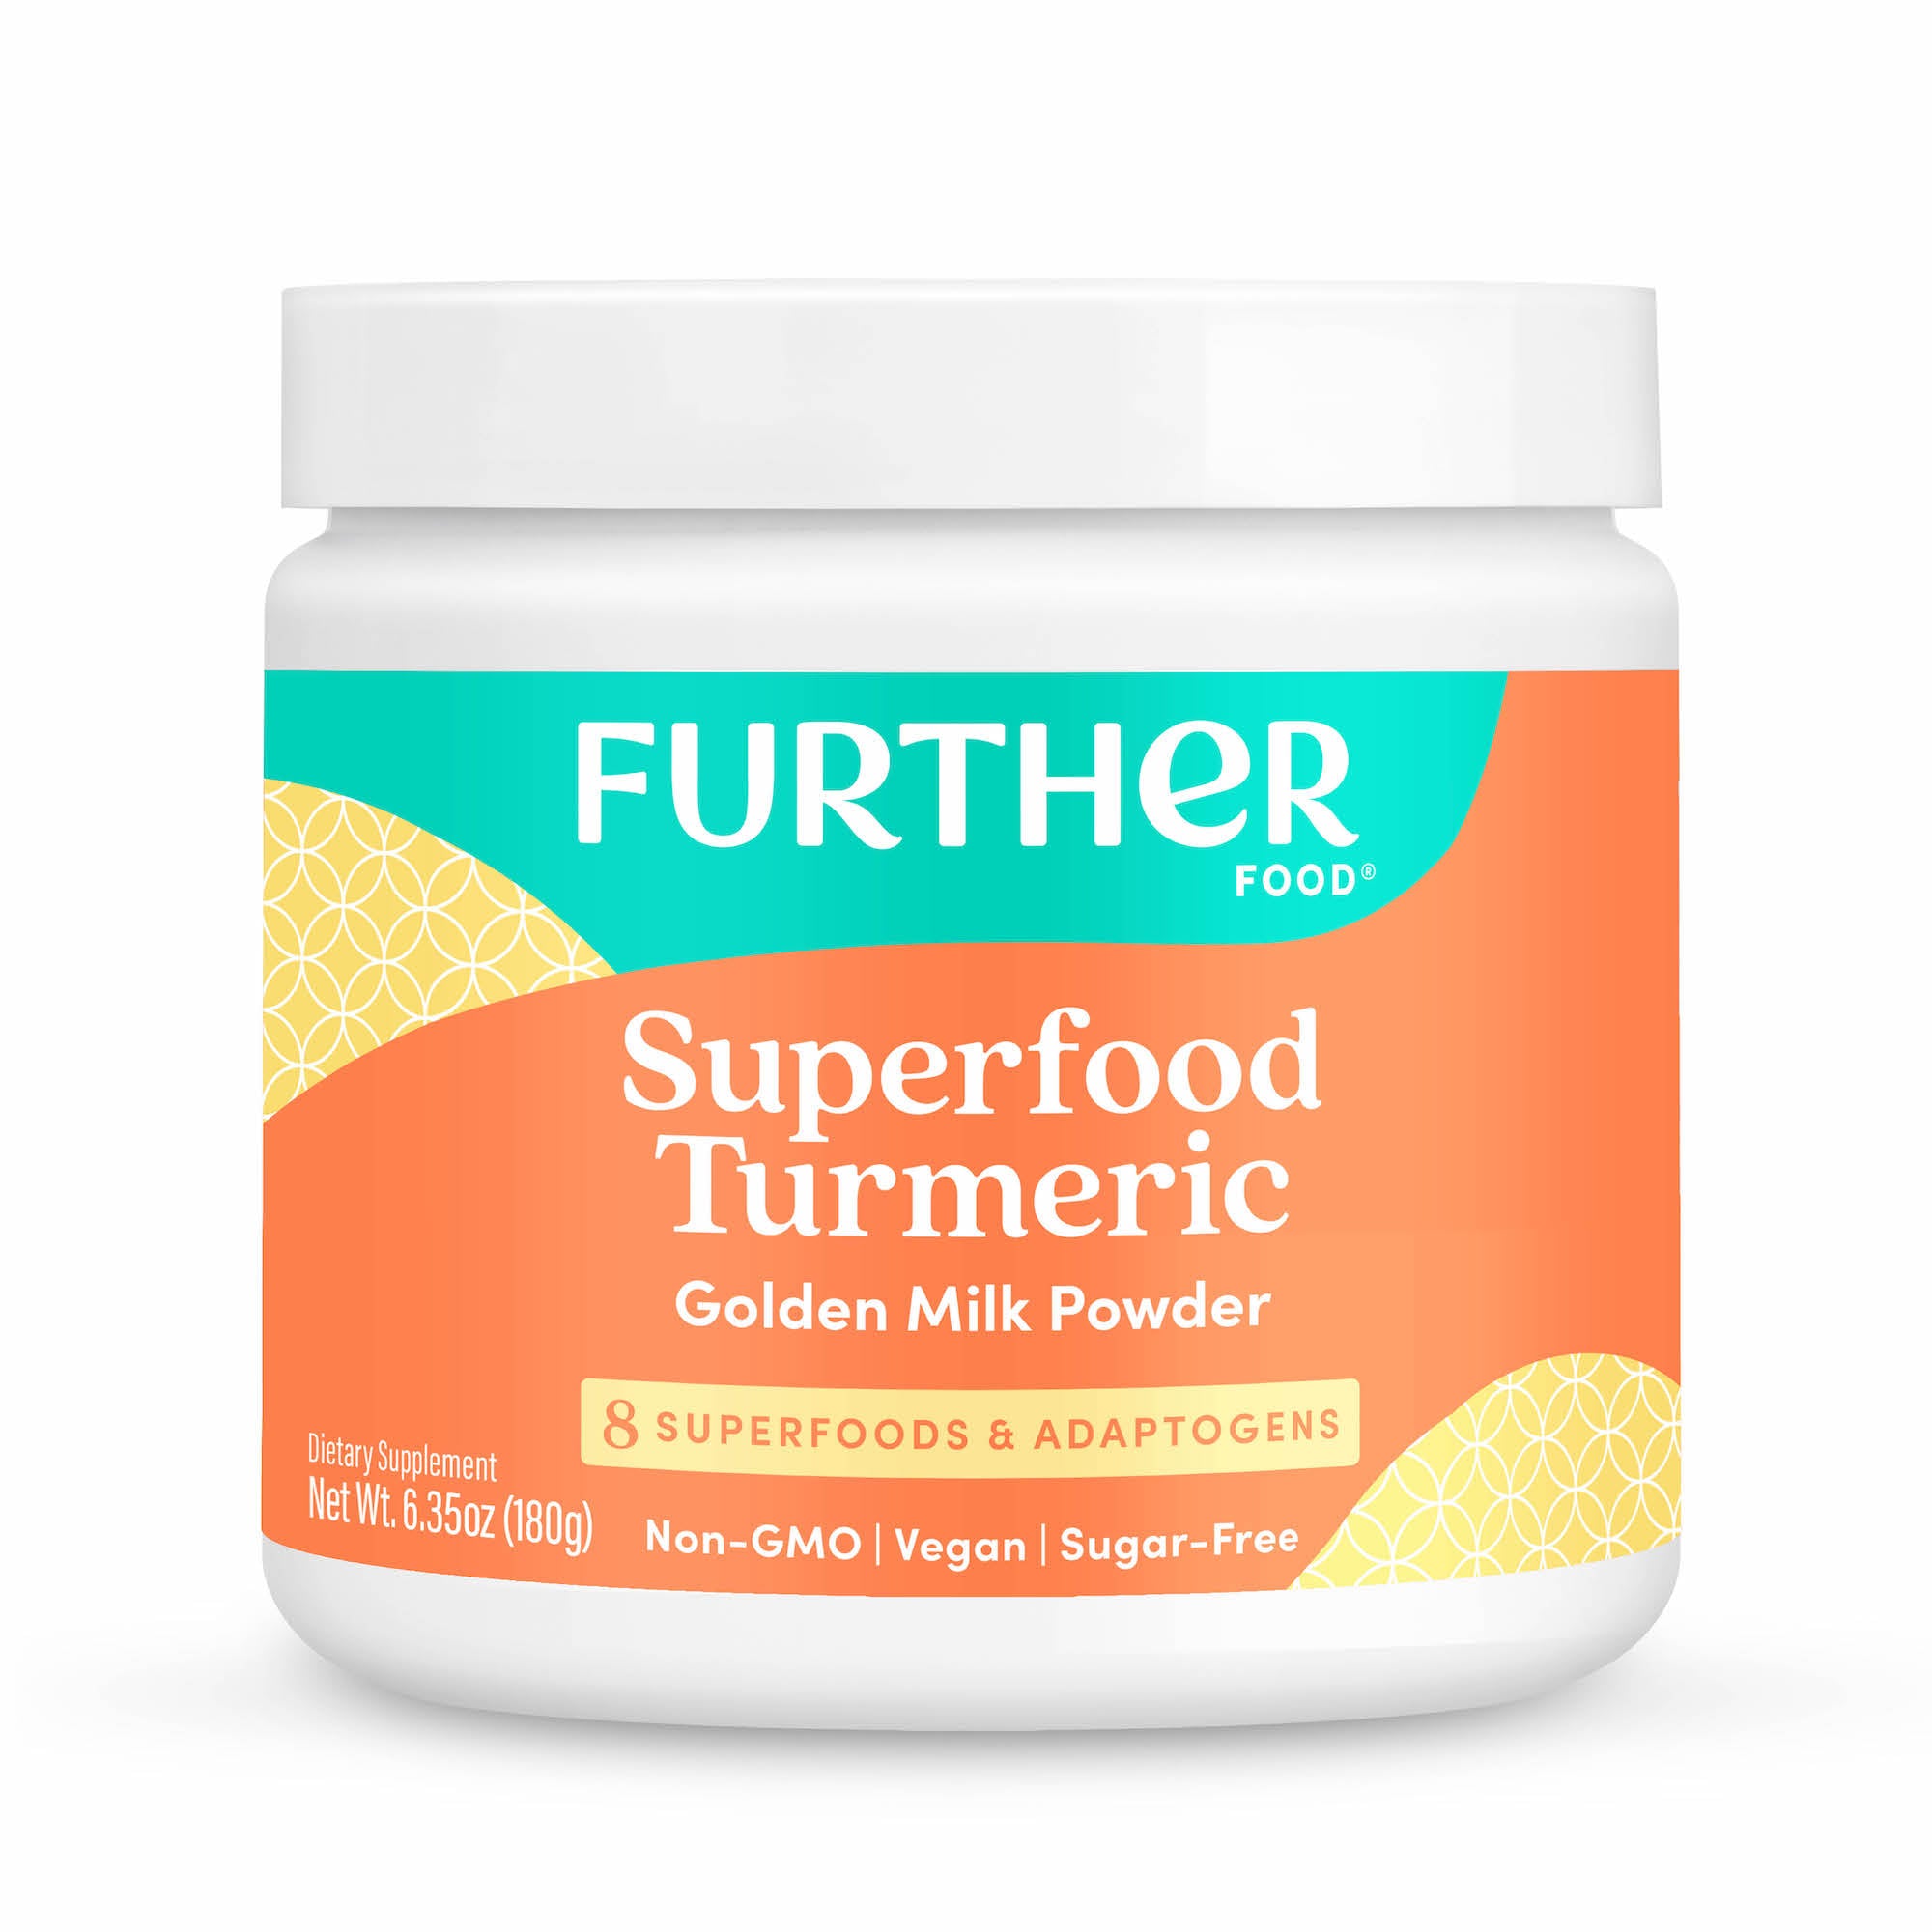 Superfood Turmeric